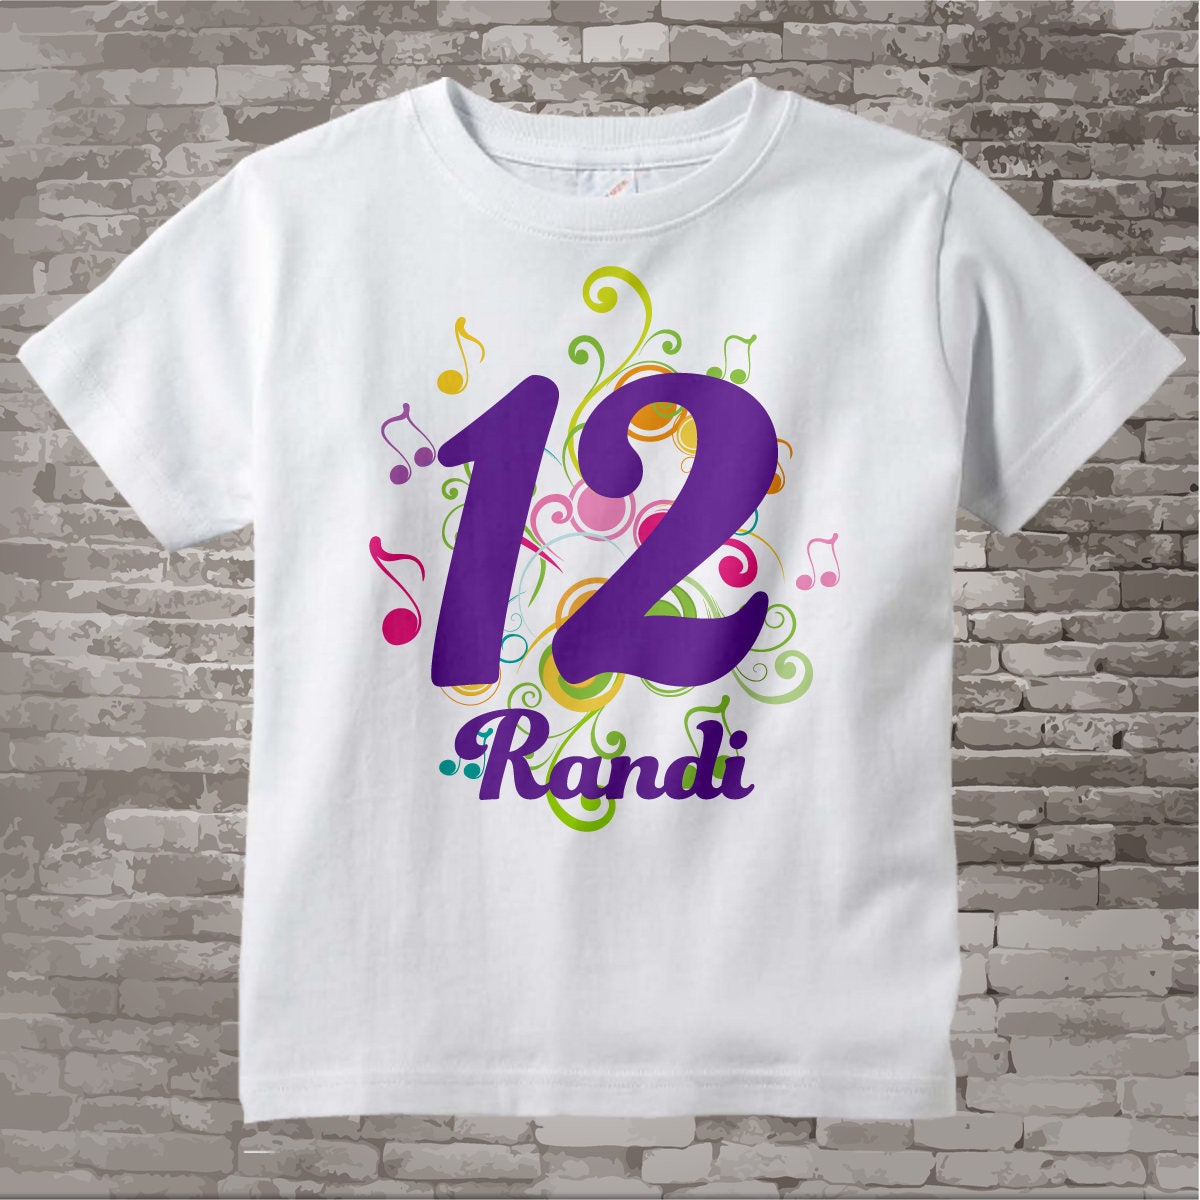 Camiseta de cumpleaños número 12 Niña de 12 años / Ideas de regalos para  niños Guión de 12 años Camiseta de cumpleaños de doce años / Camiseta de  cumpleaños número 12 para niñas Guión -  España